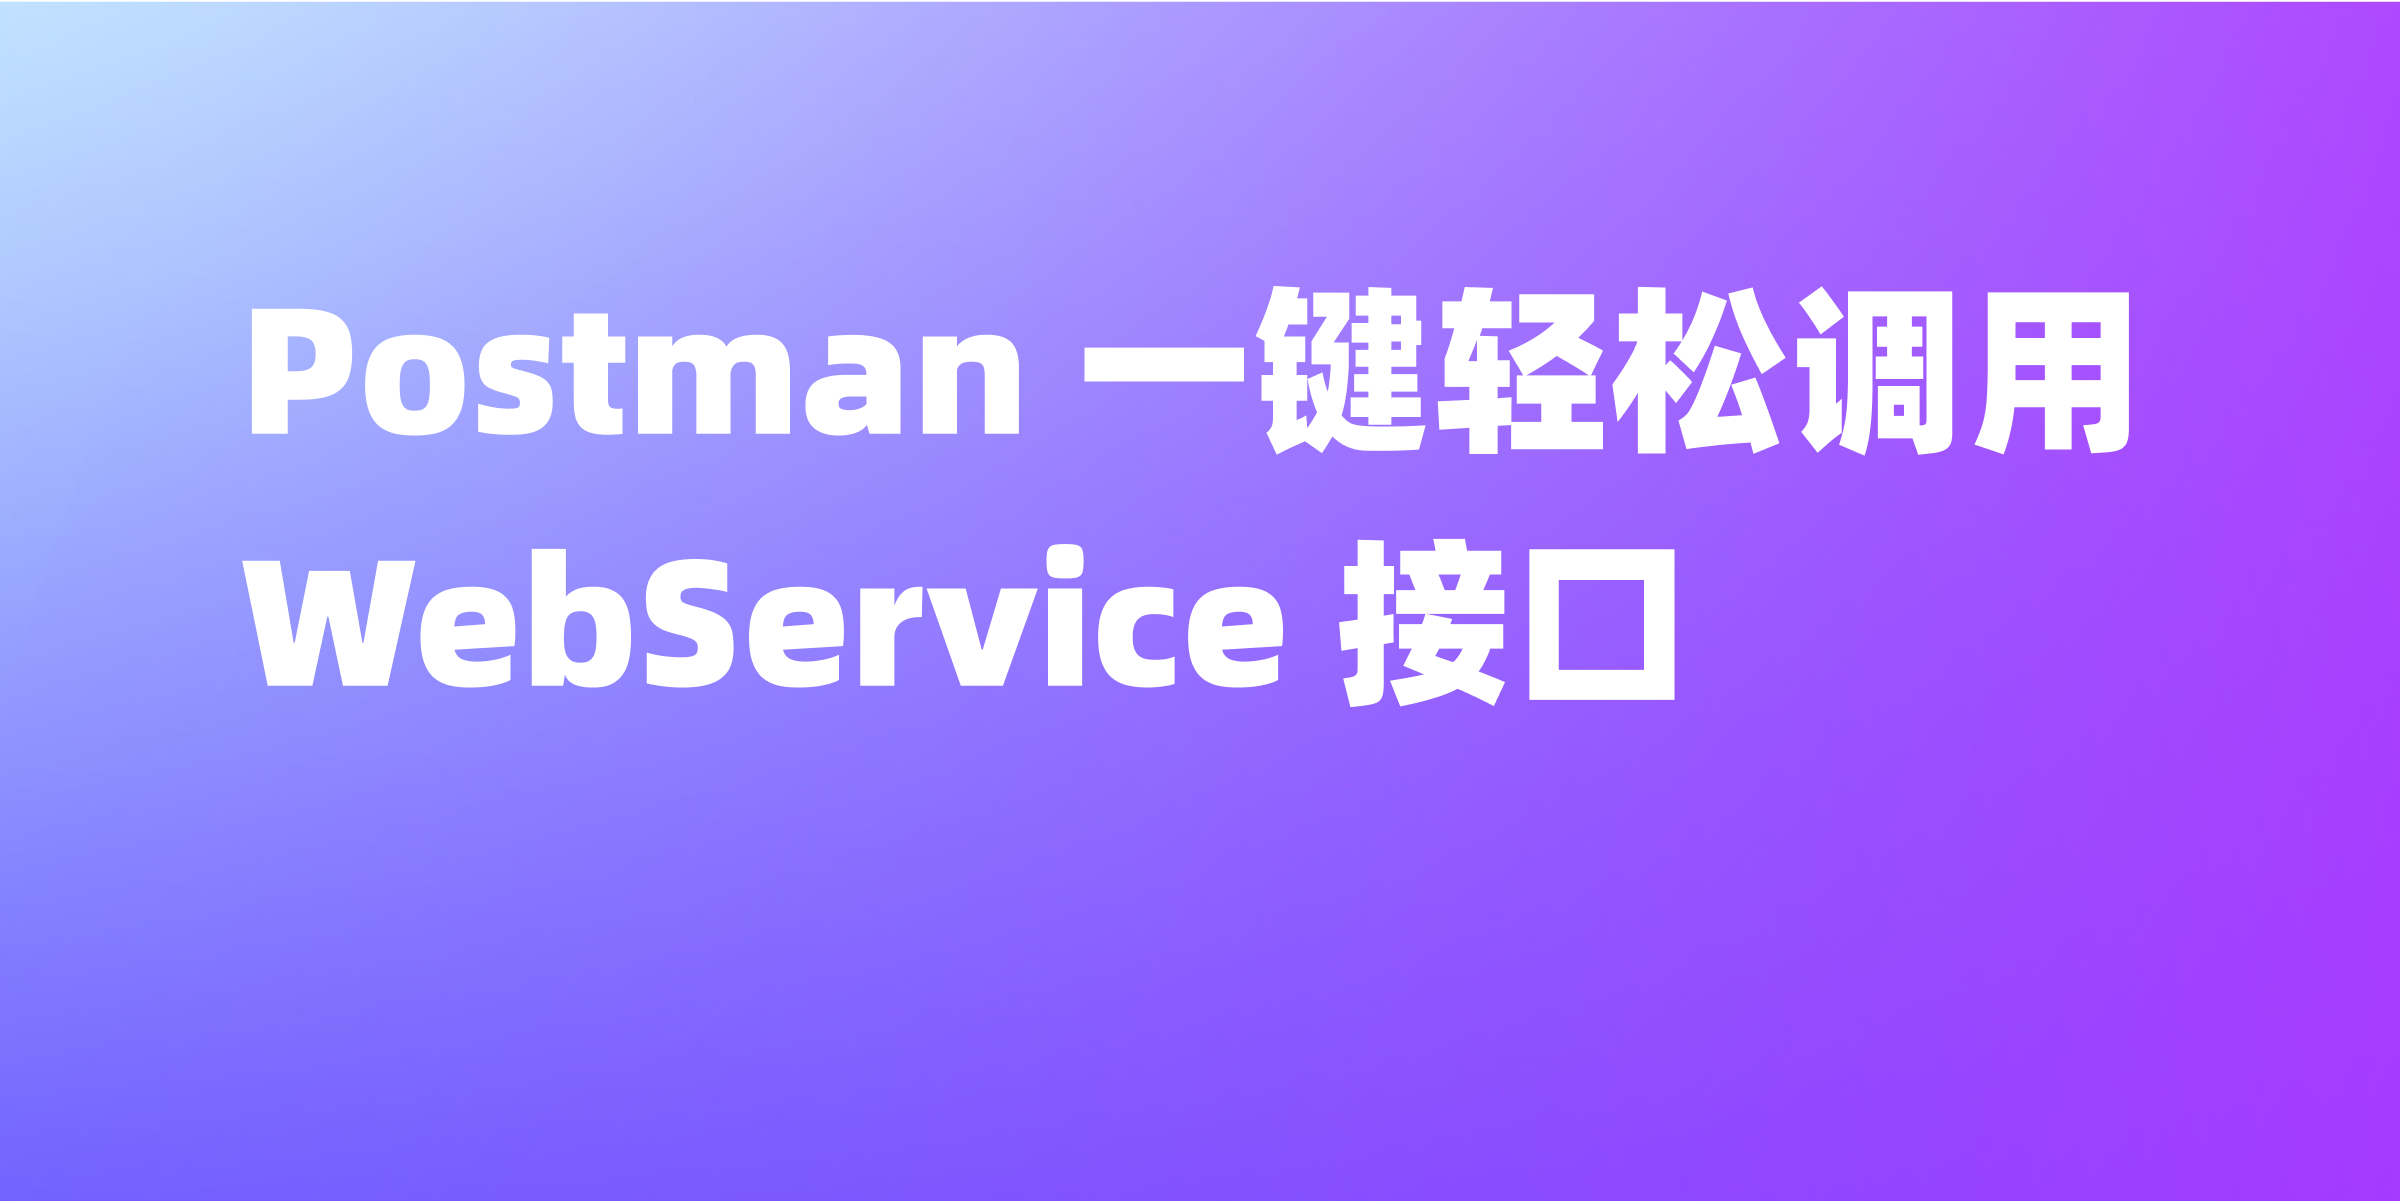 如何使用 Postman 调用 WebService 接口